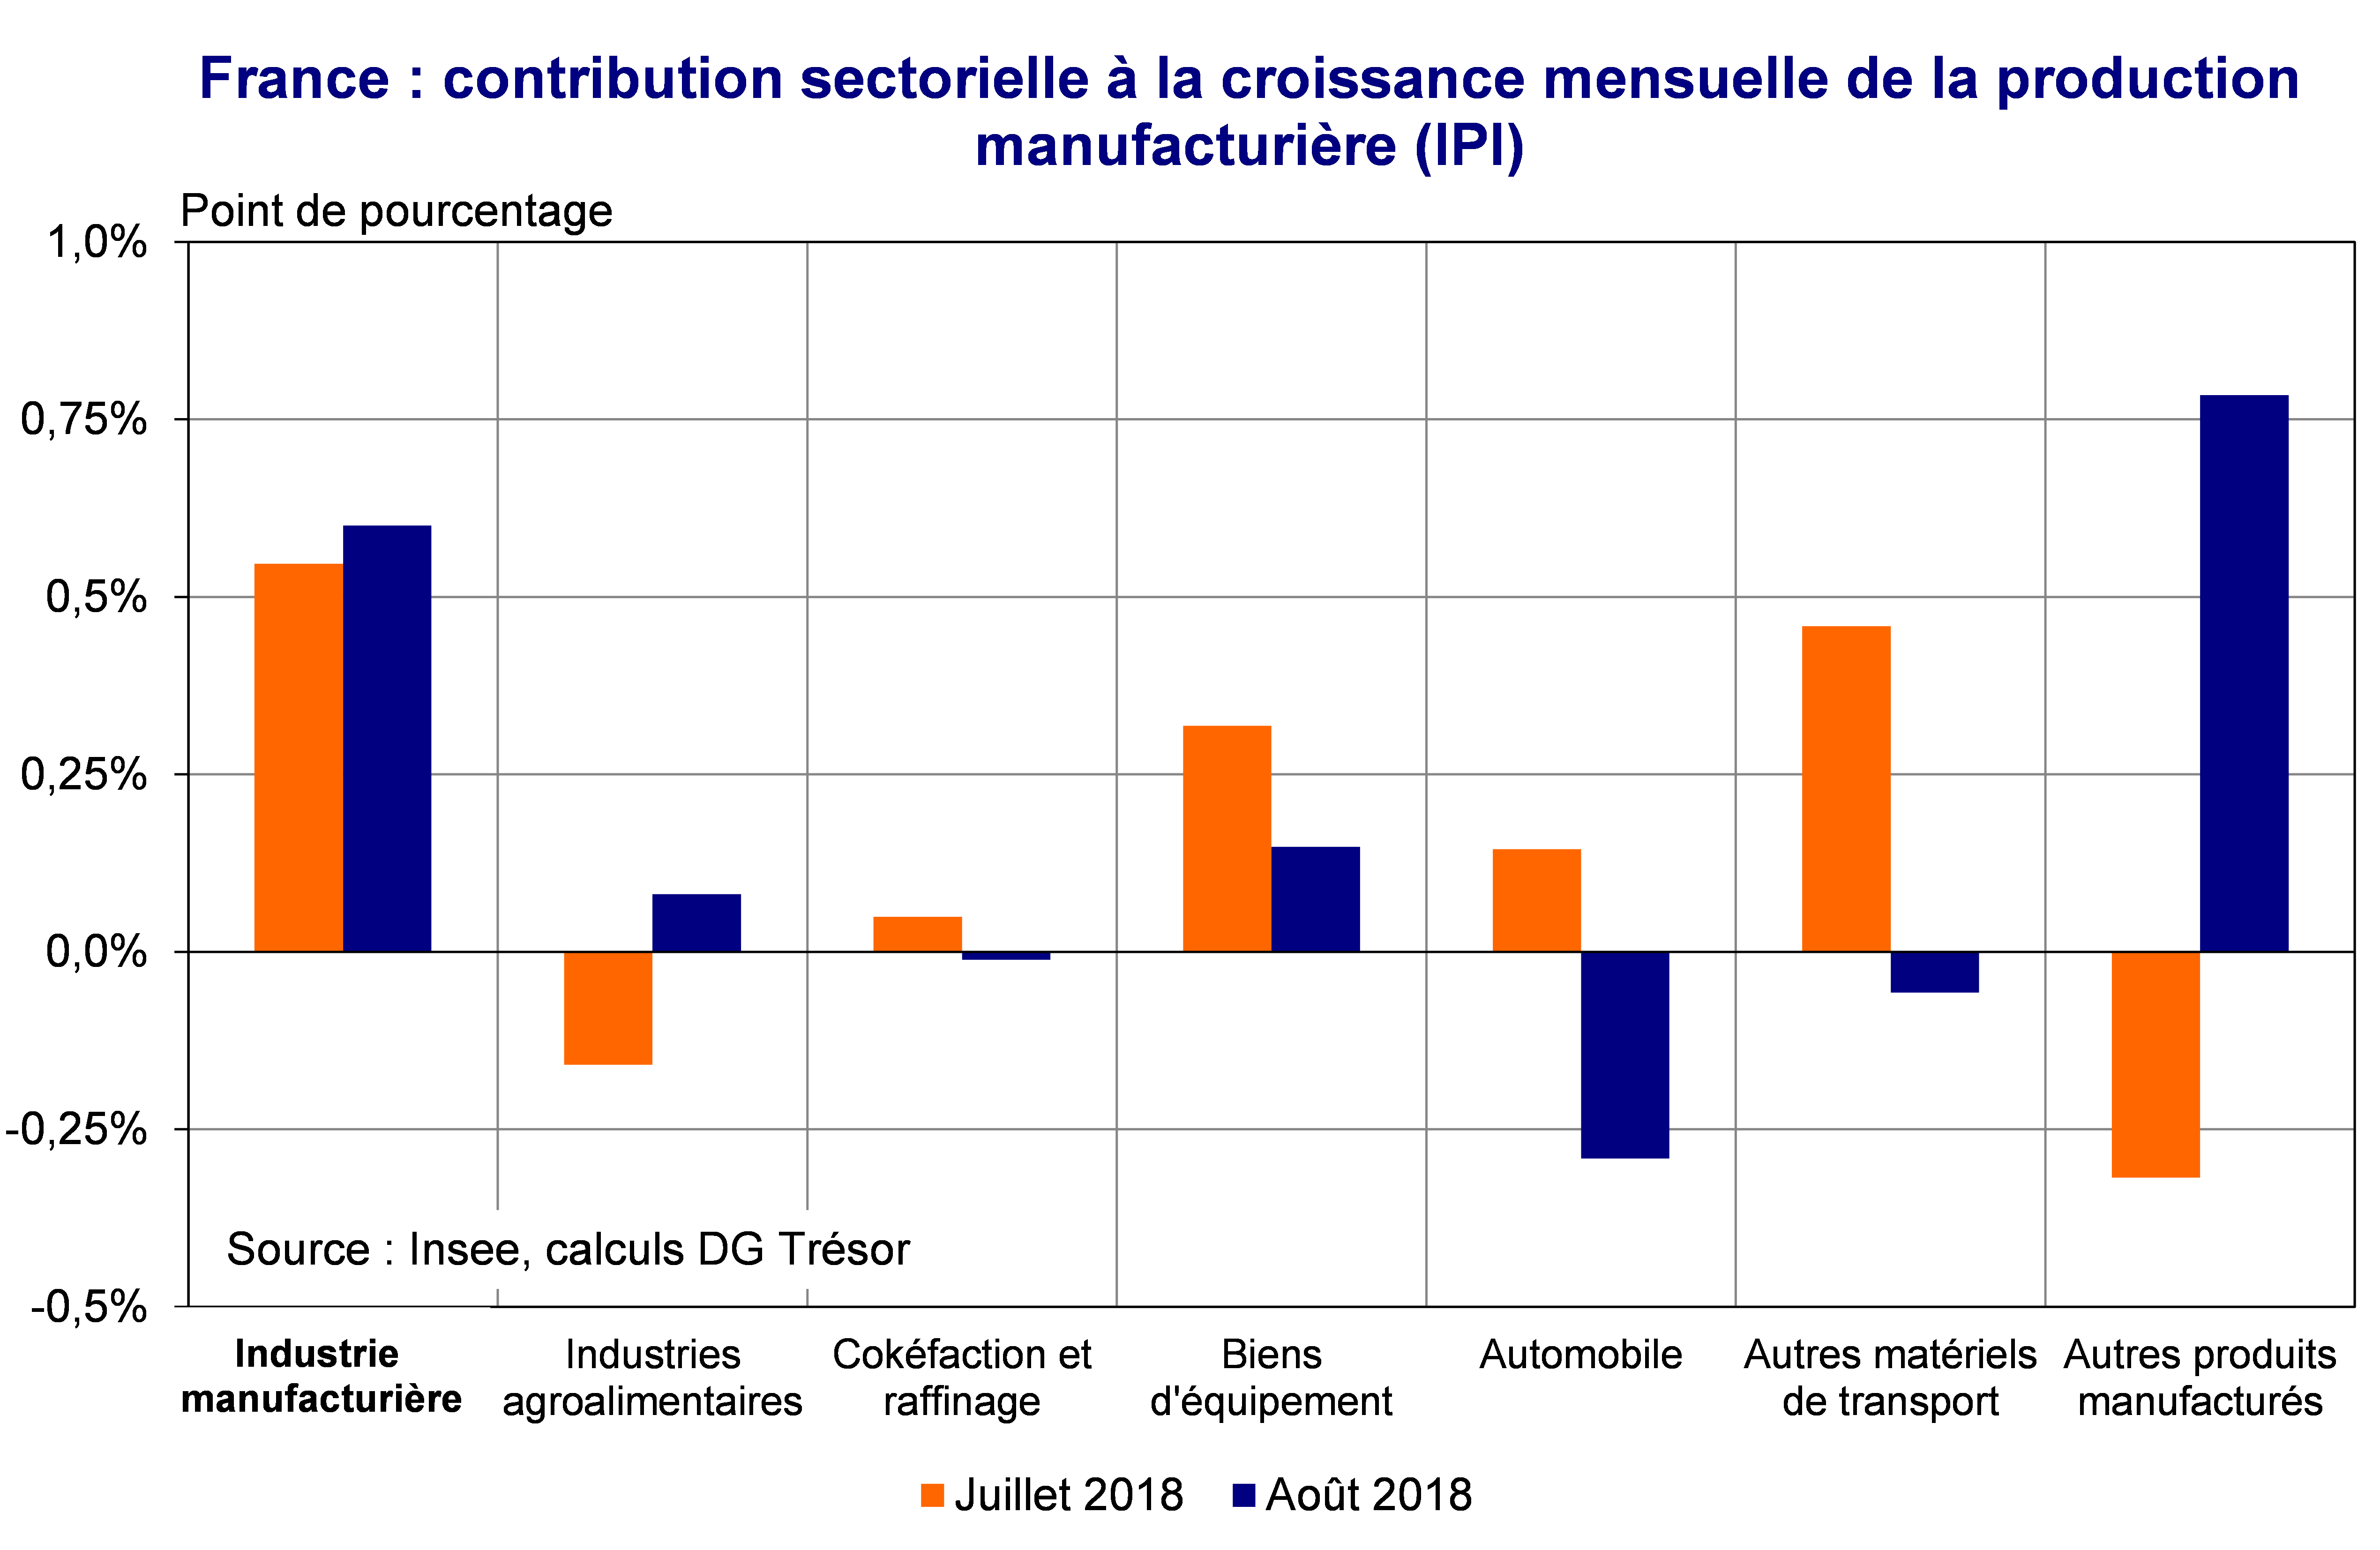 France contribution sectorielle à la croissance mensuelle de la production manufacturière